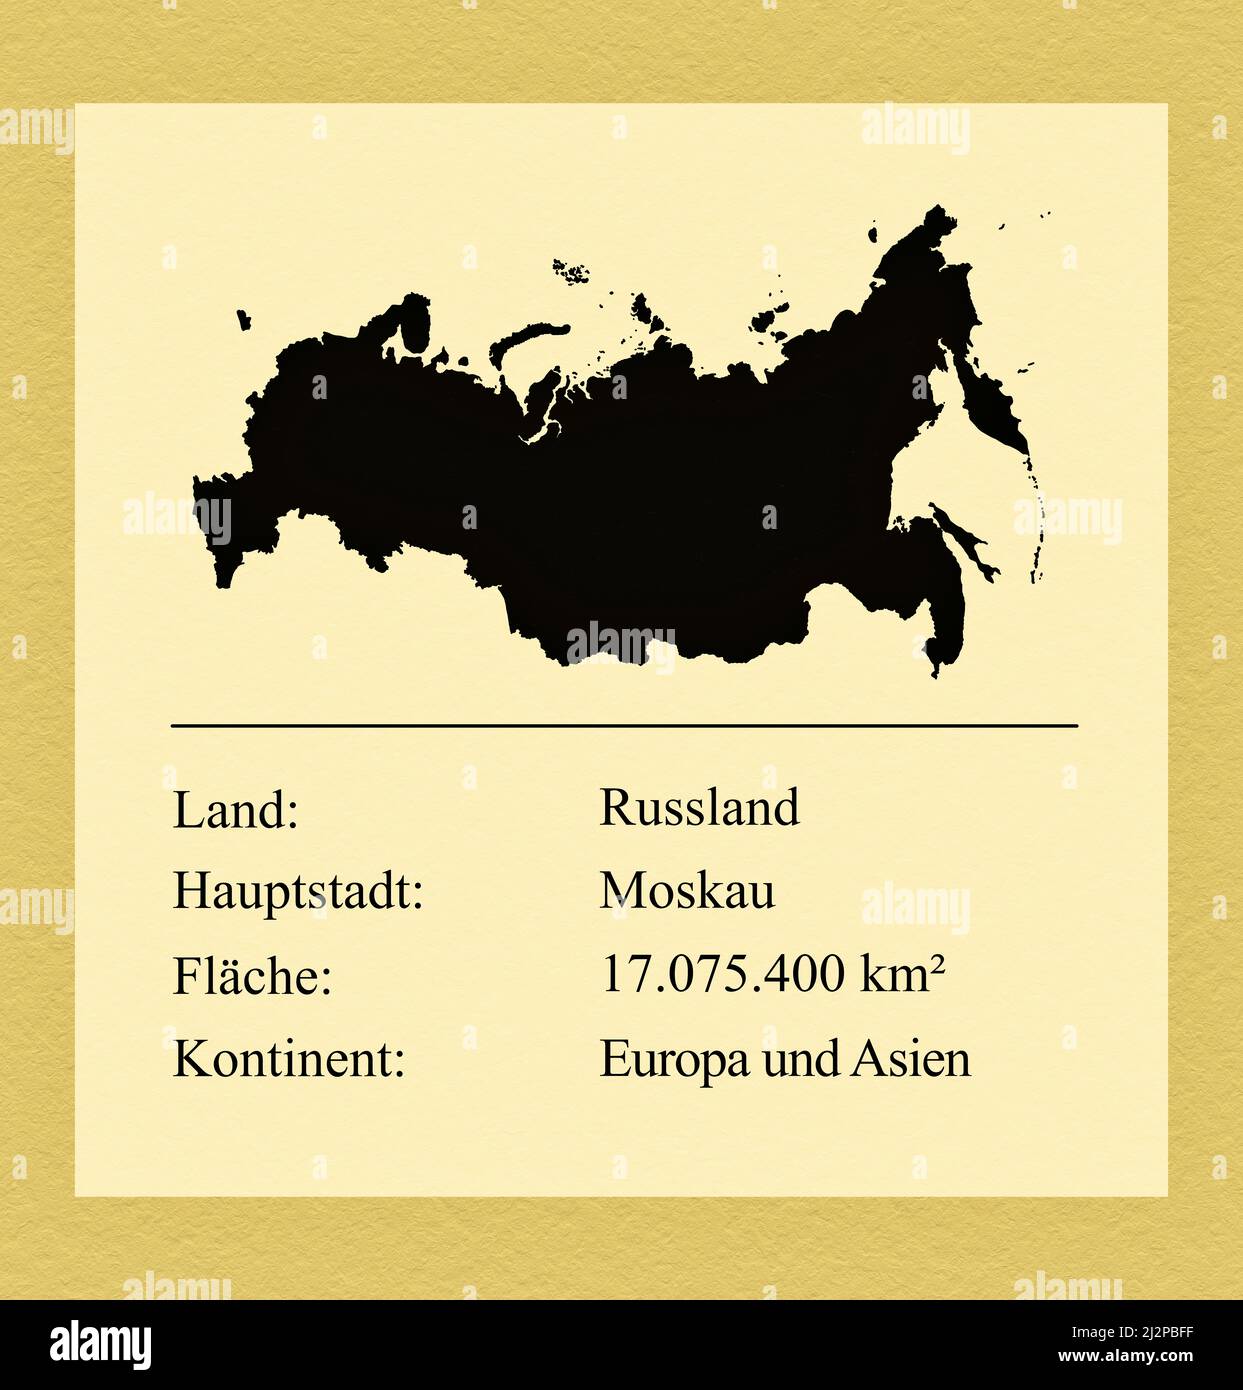 Umrisse des Landes Russland, darunter ein kleiner Steckbrief mit Ländernamen, Hauptstadt, Fläche und Kontinent Foto de stock